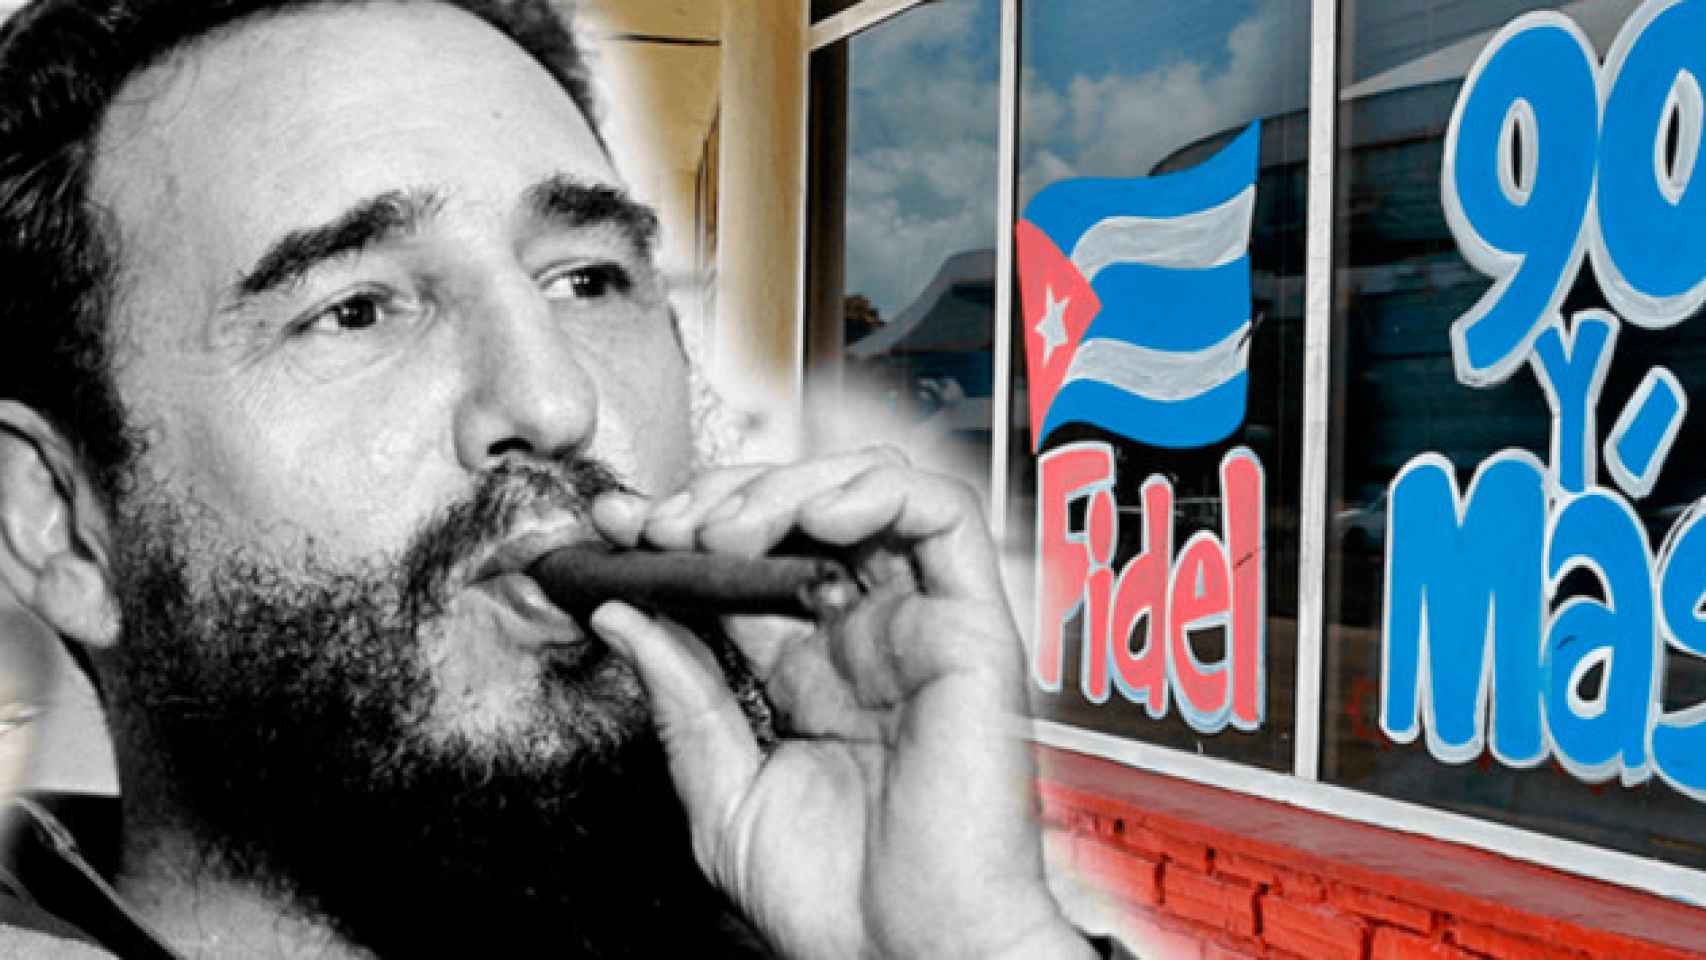 El ex presidente de Cuba Fidel Castro / FOTOMONTAJE DE CG